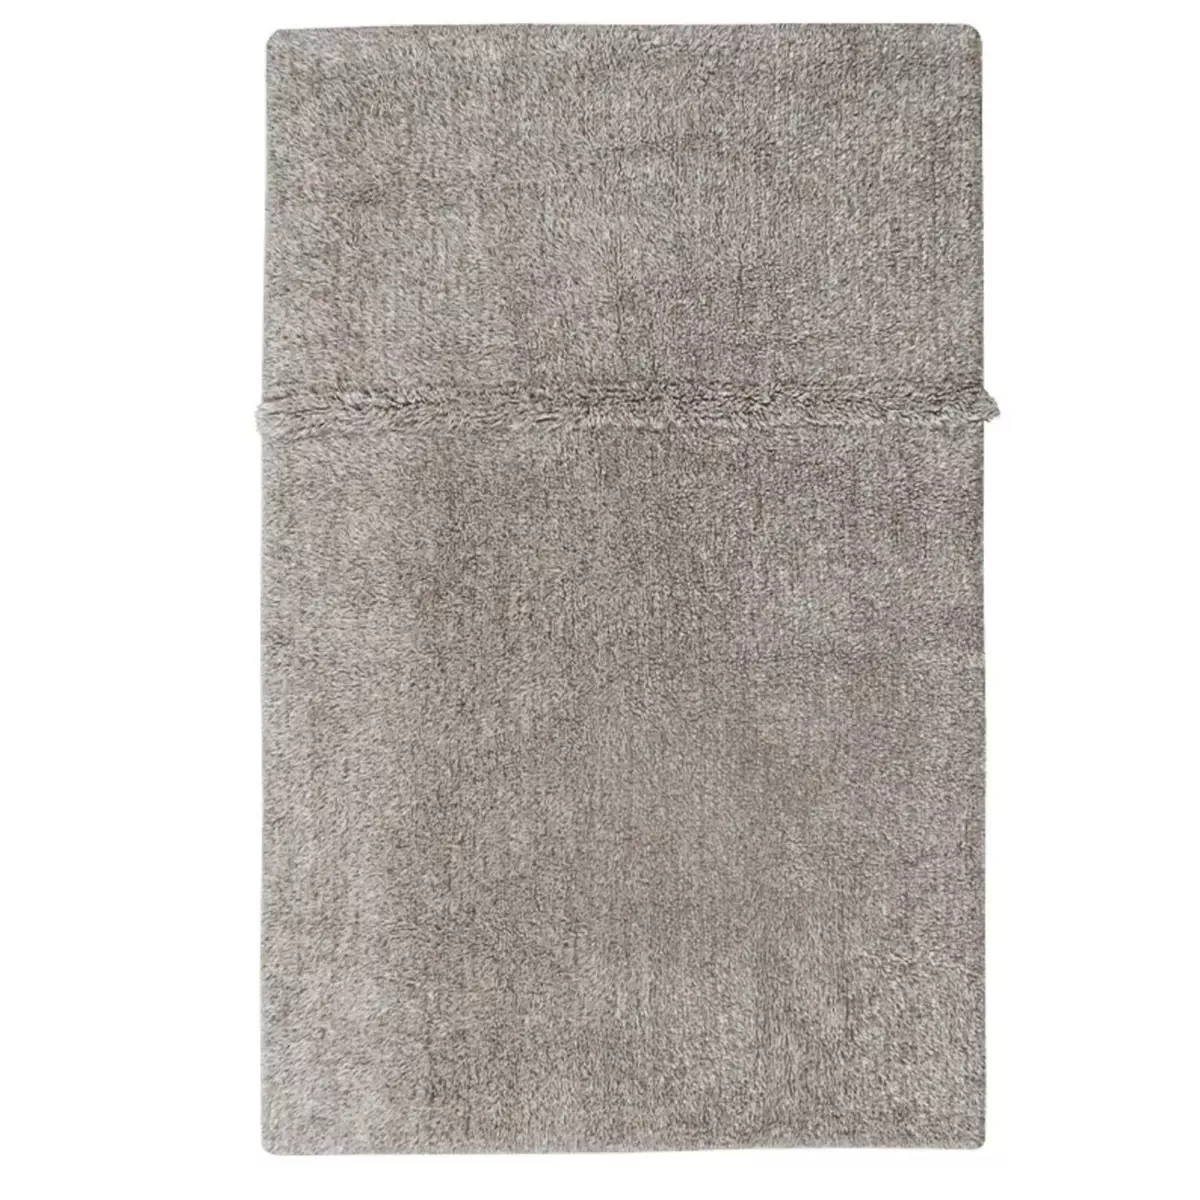 Lorena Canals Tapis contemporain en laine gris chiné - 170 x 240 cm